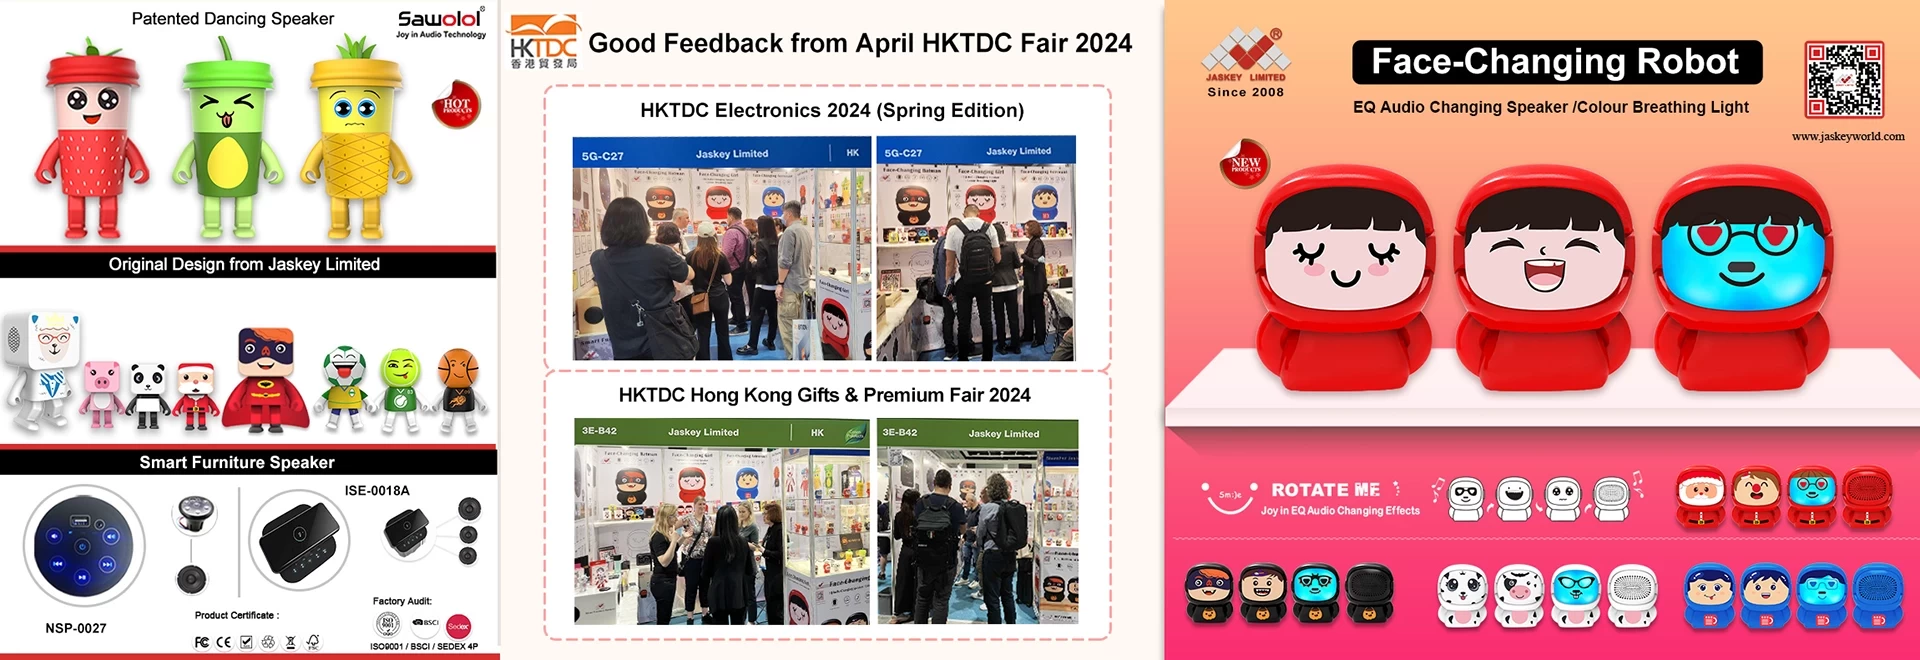 Хорошие отзывы о выставке HKTDC Electronics 2024 (весеннее издание) и ярмарке подарков и премиум-класса.